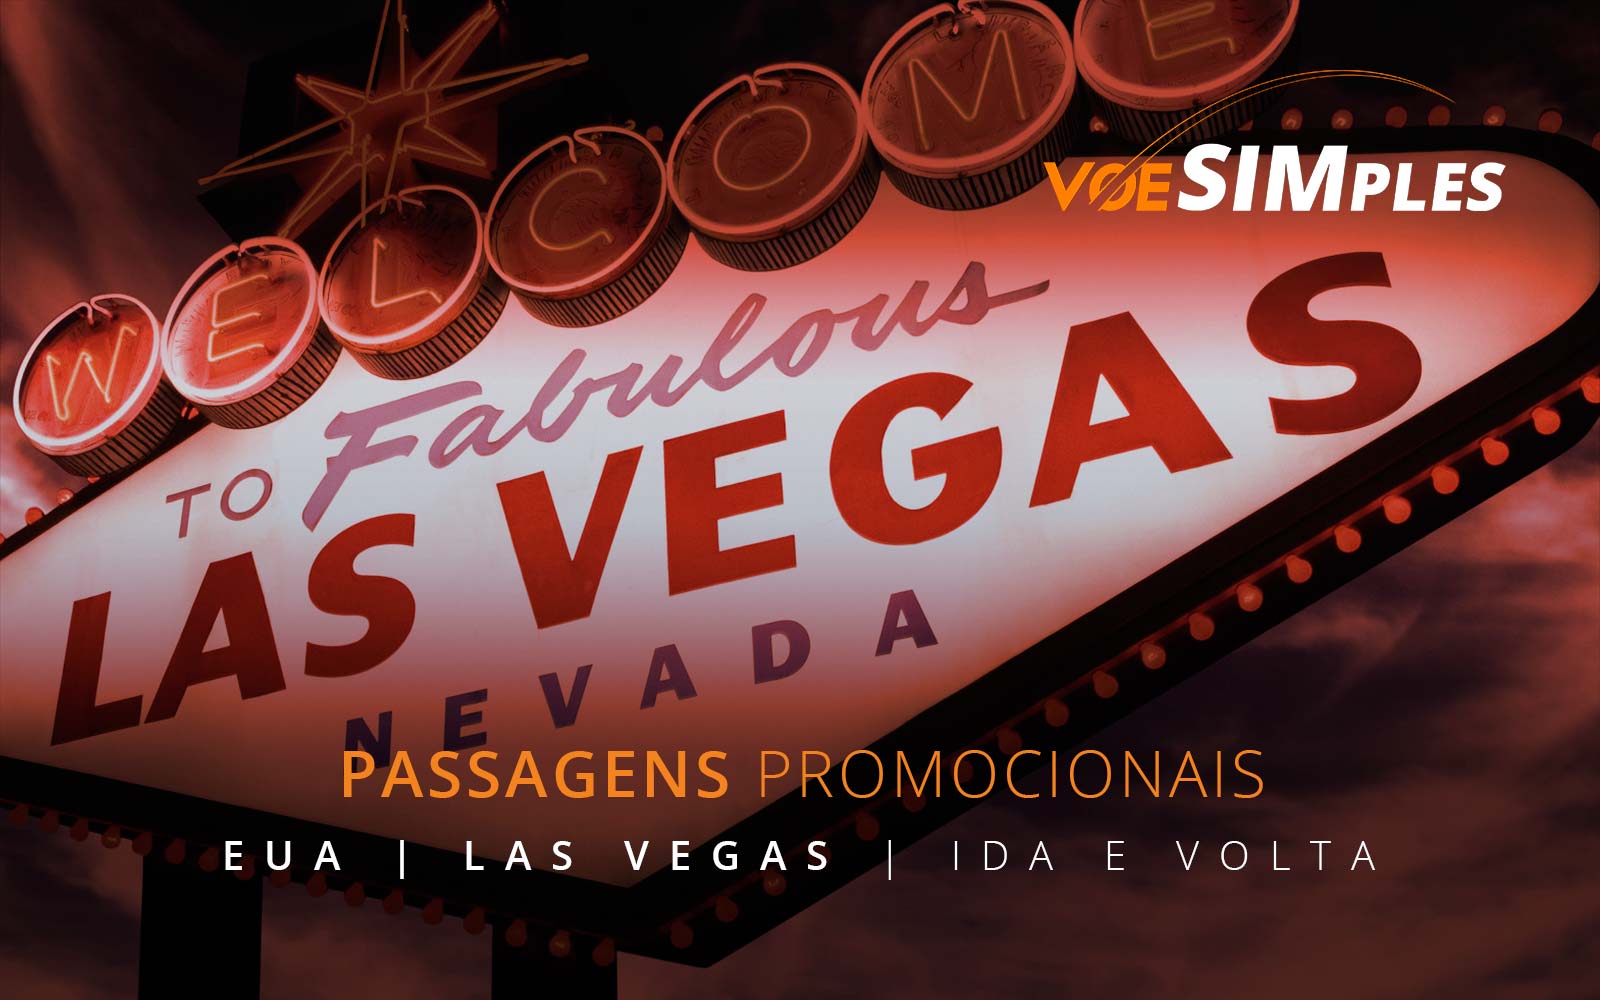 Passagens aéreas promocionais para Las Vegas nos Estados Unidos